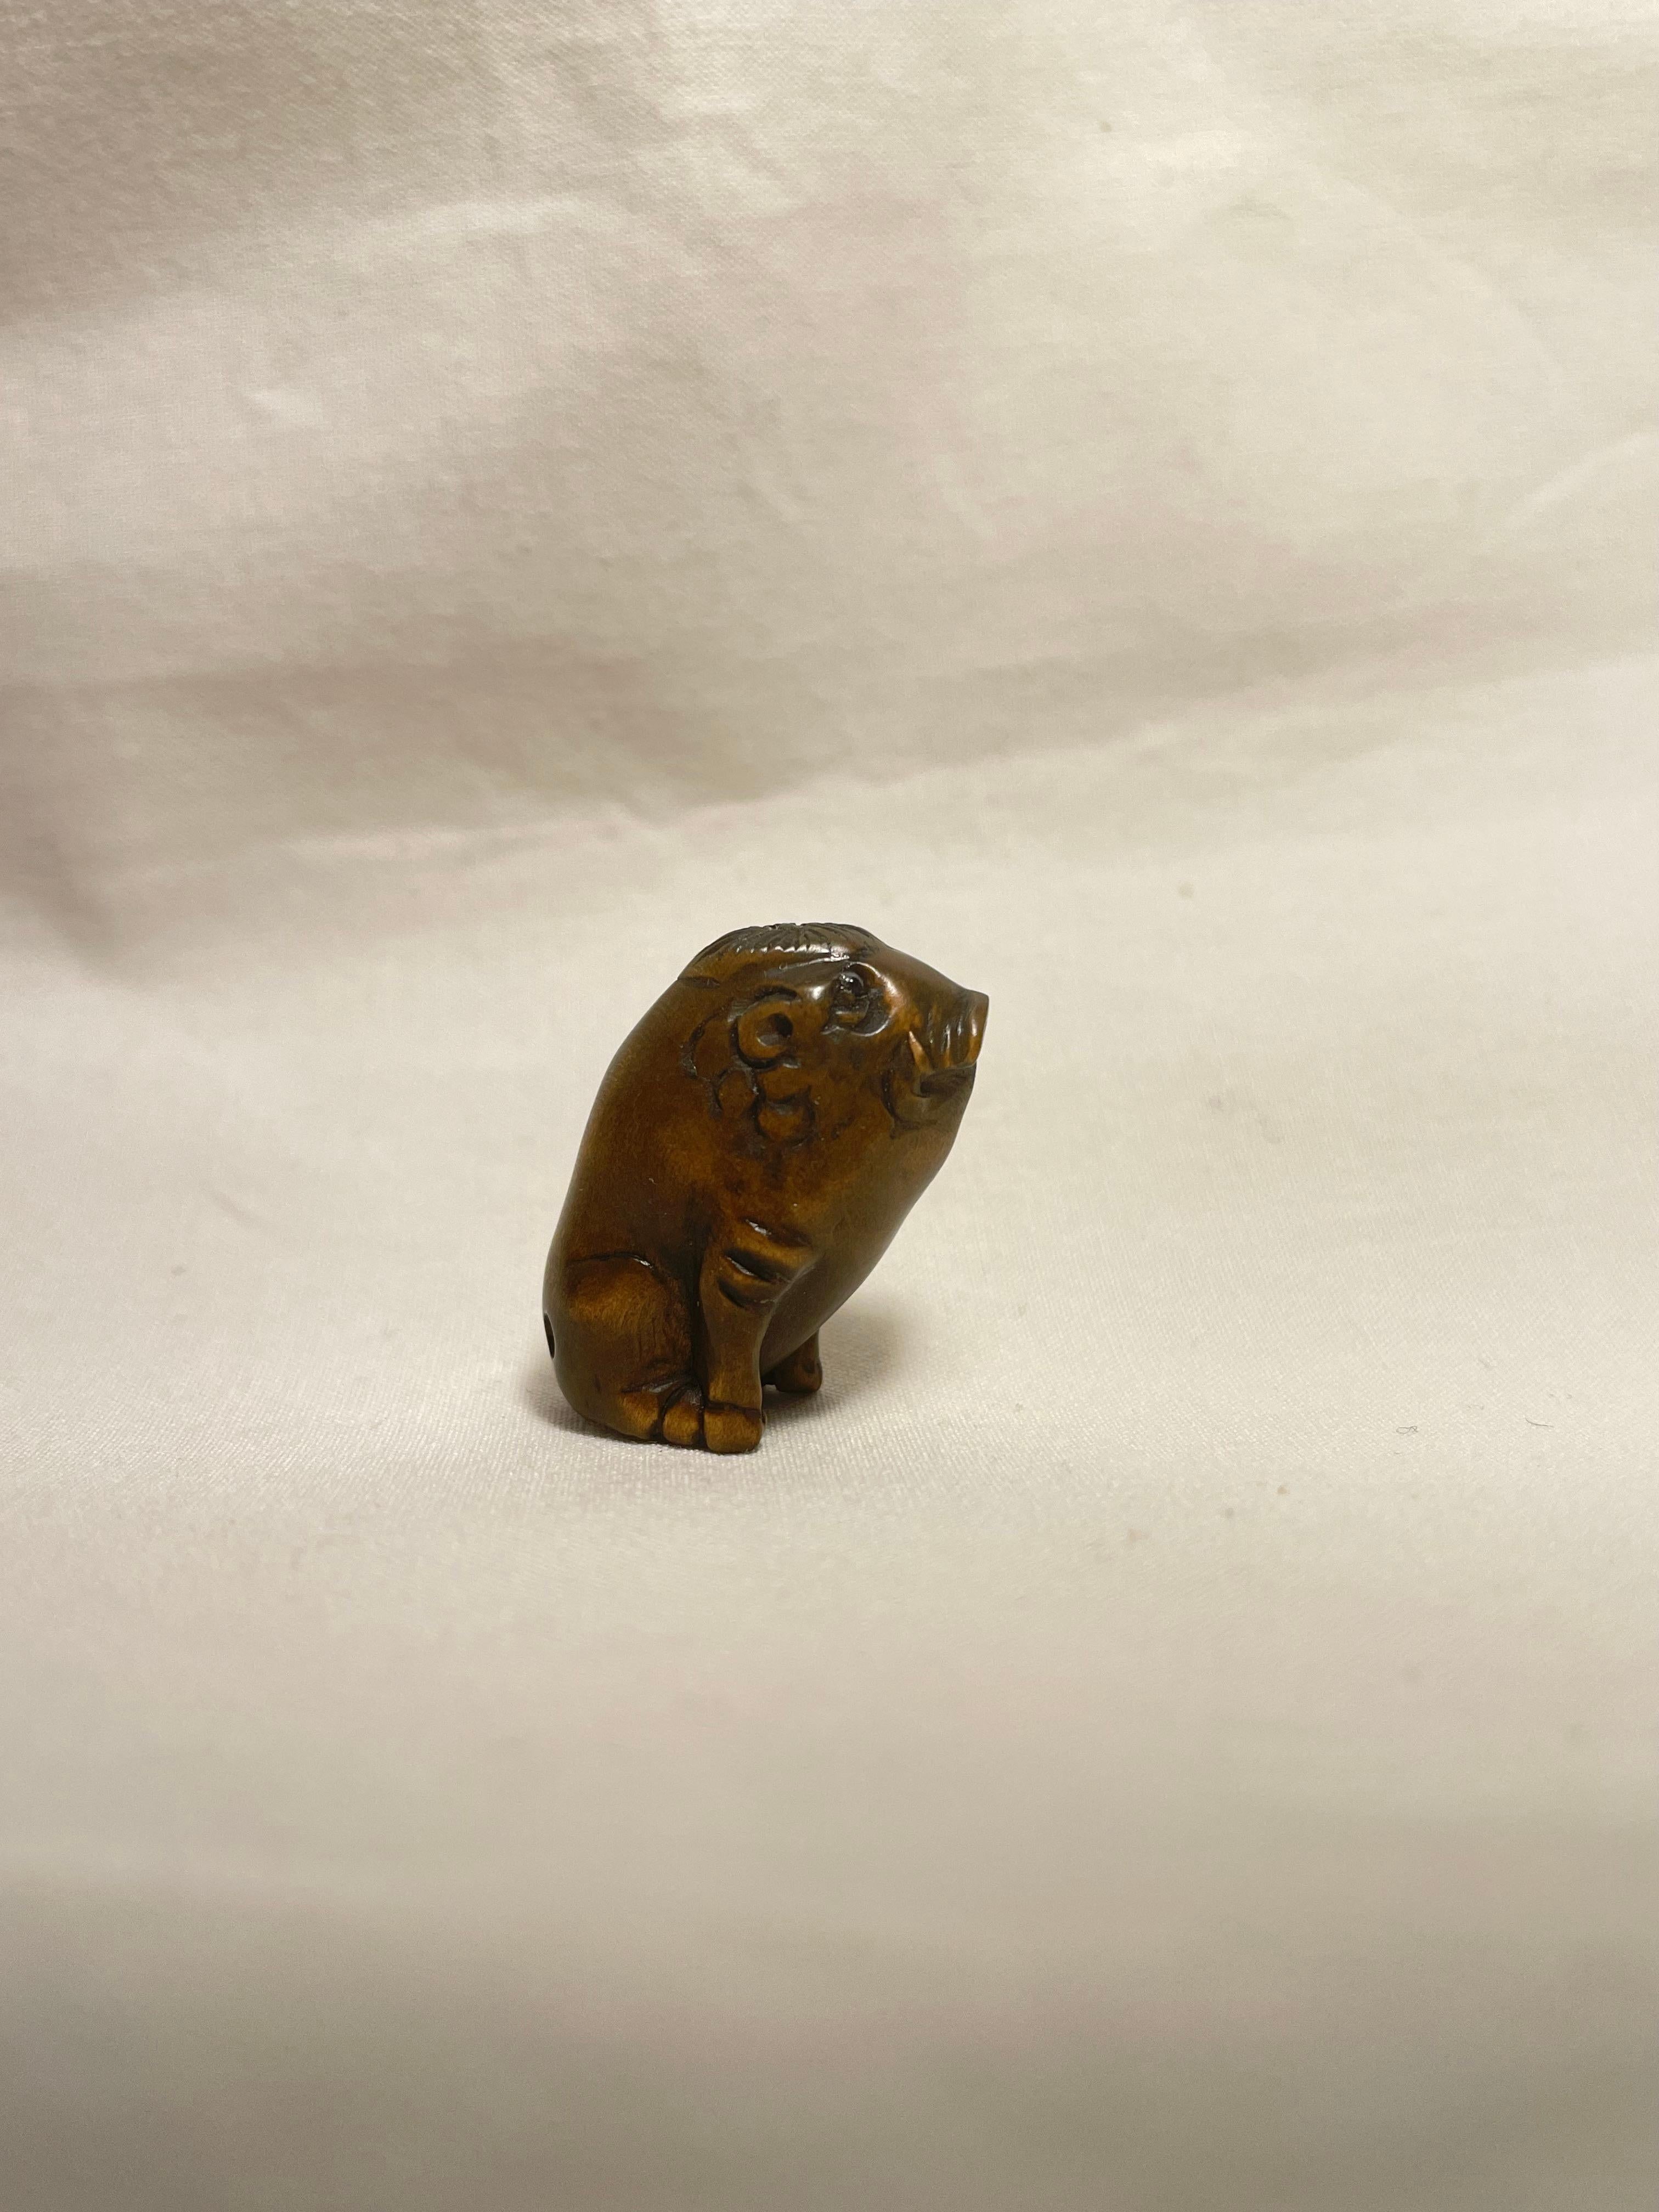 Il s'agit d'un netsuke ancien fabriqué au Japon vers la période Showa des années 1960.

Dimensions : 1,5 x 2,3 x H2,5 cm : 1,5 x 2,3 x H2,5cm
Sculpture : Sanglier
Époque : 1960 (Showa) 

Le Netsuke est une sculpture miniature originaire du Japon du